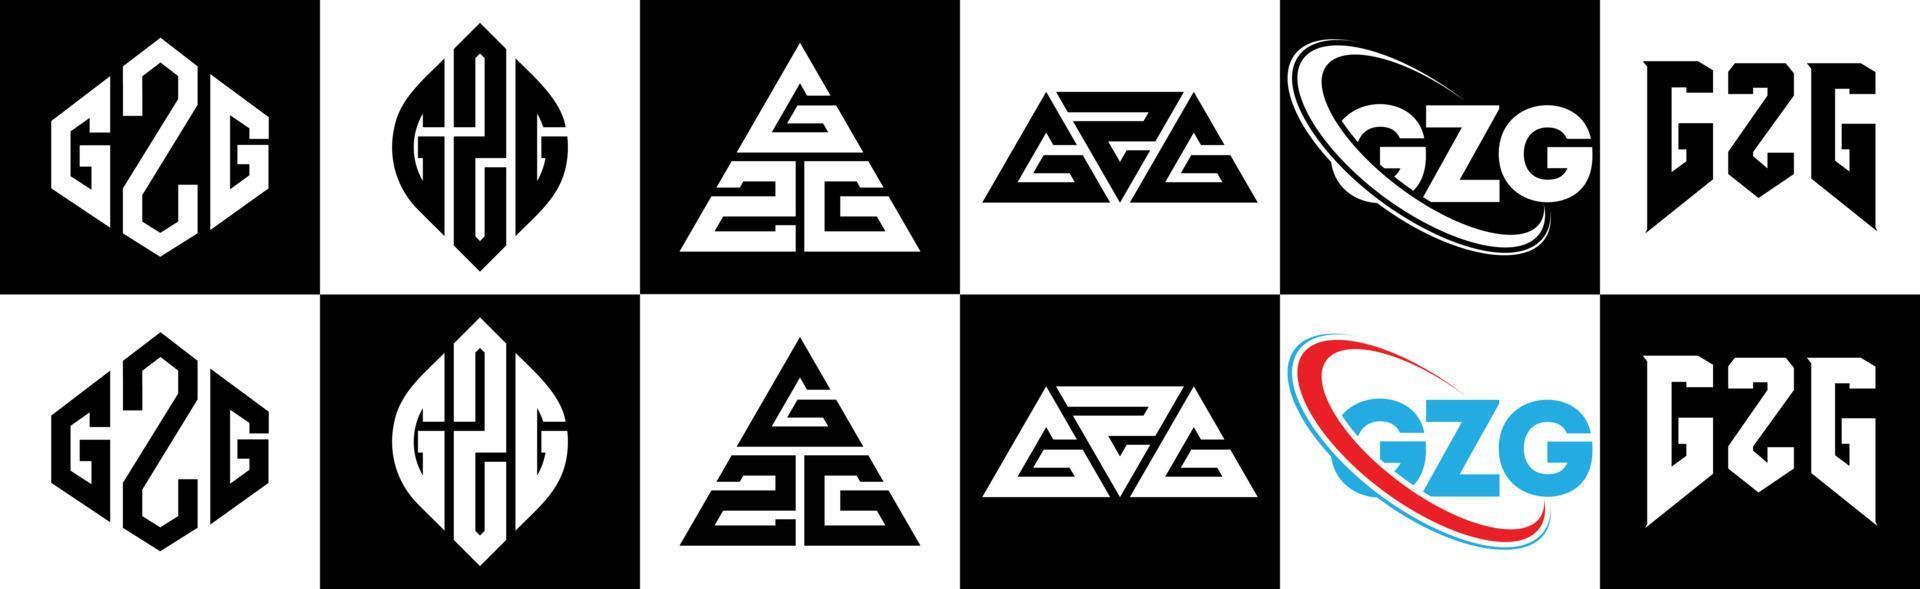 diseño de logotipo de letra gzg en seis estilos. gzg polígono, círculo, triángulo, hexágono, estilo plano y simple con logotipo de letra de variación de color blanco y negro en una mesa de trabajo. logotipo gzg minimalista y clásico vector